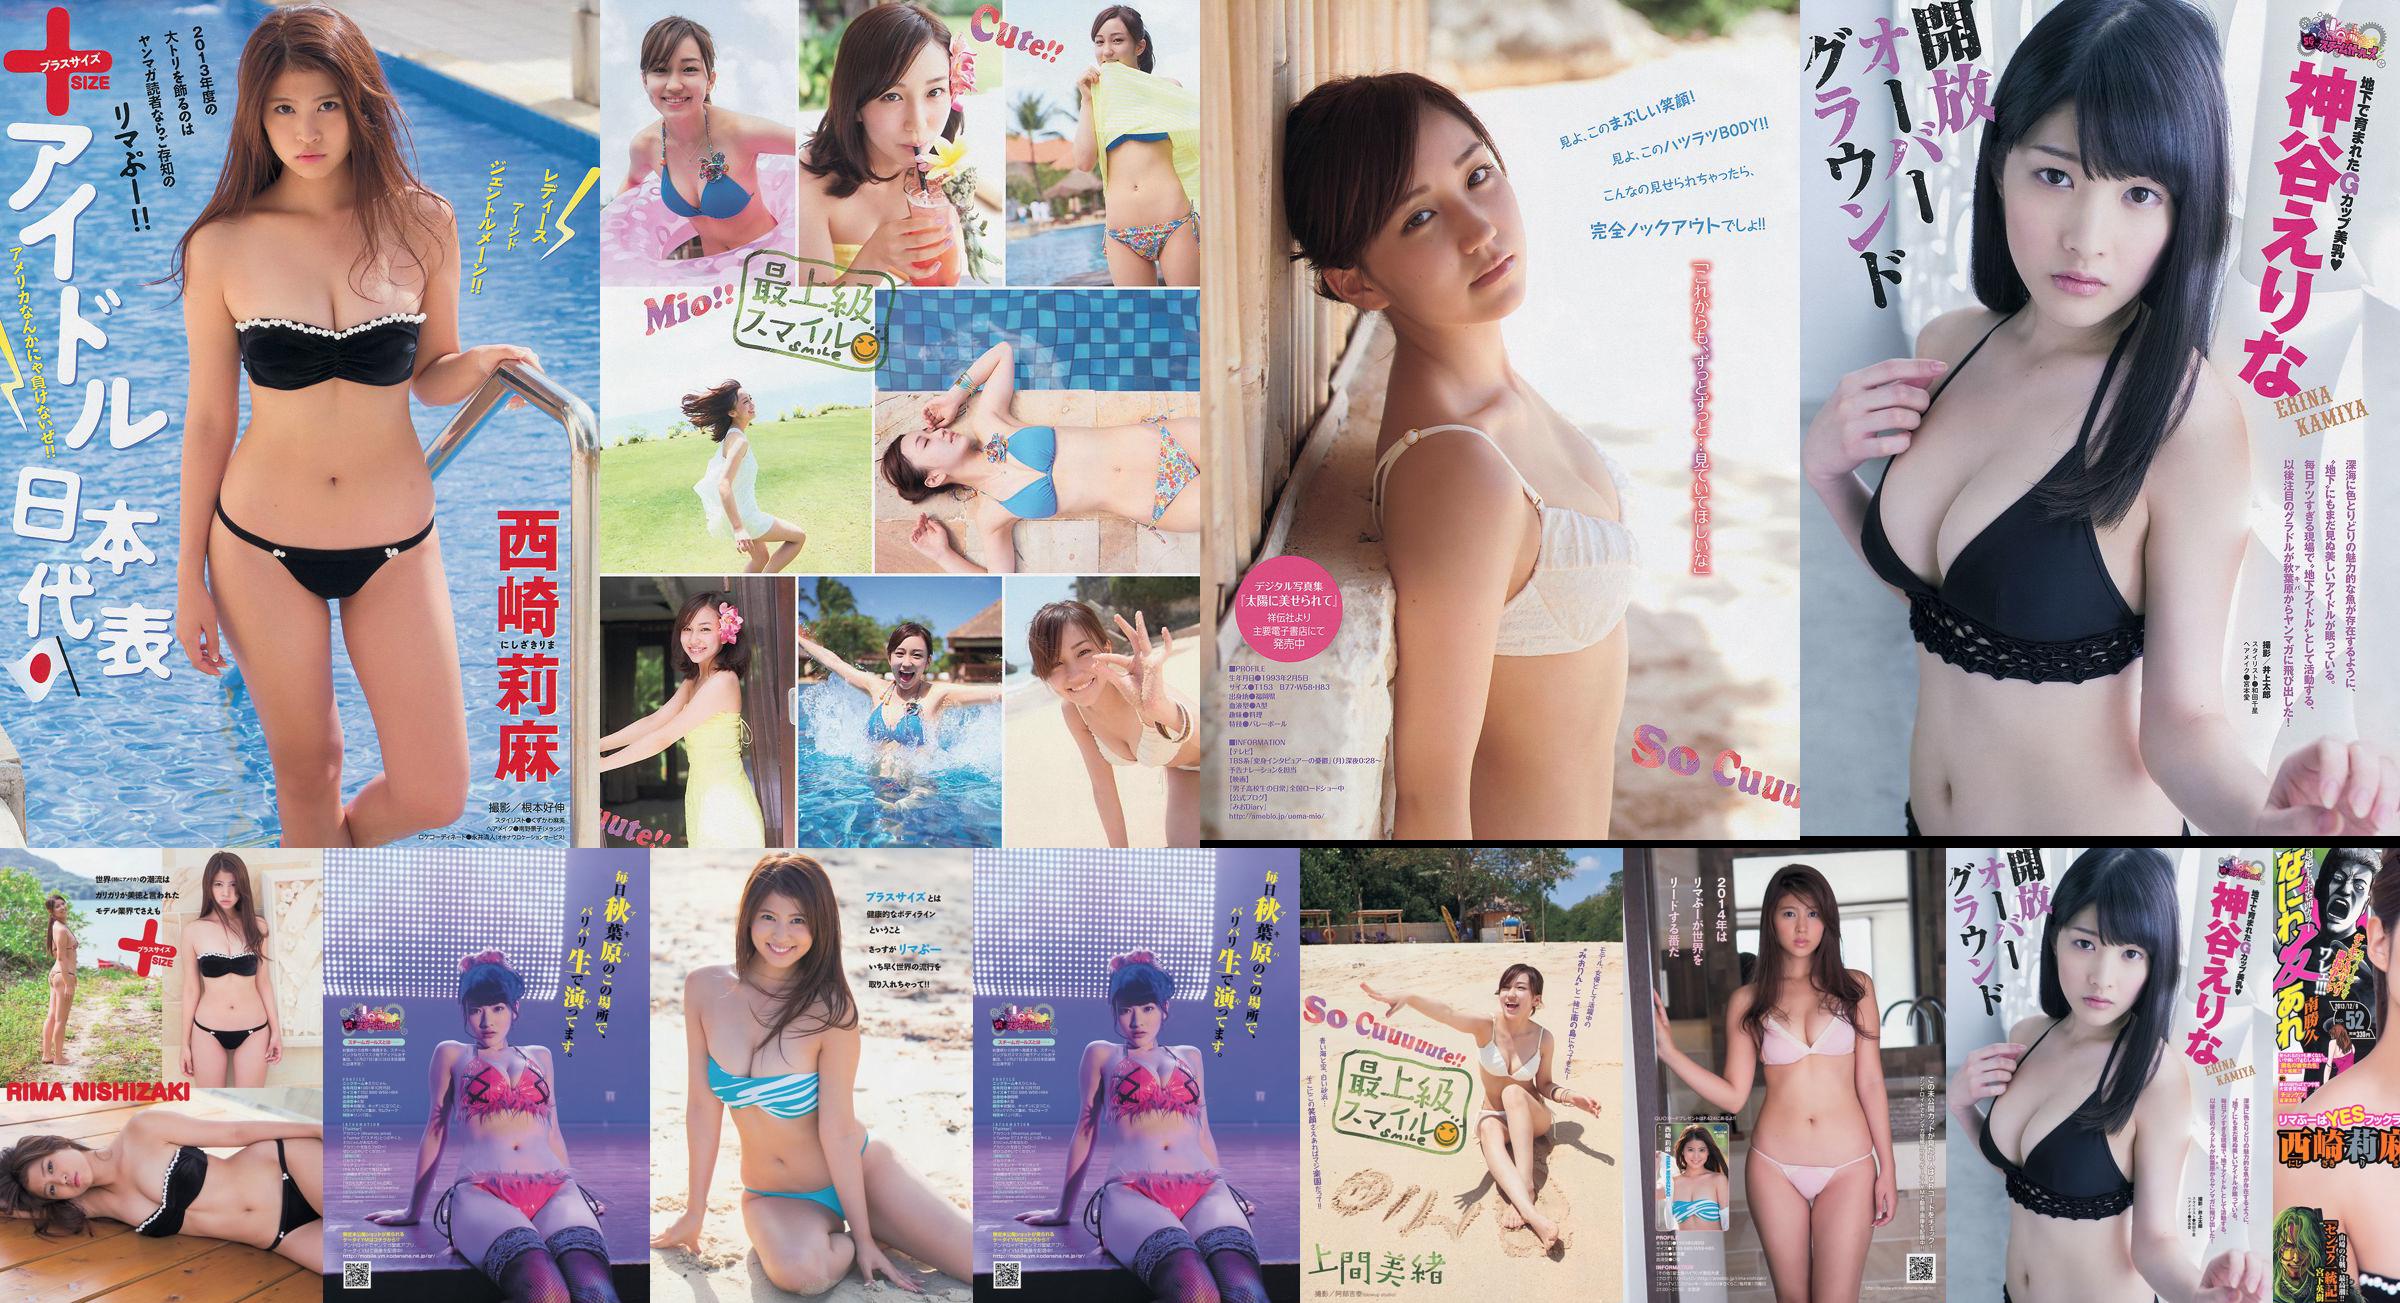 [Junge Zeitschrift] Rima Nishizaki Mio Uema Erina Kamiya 2013 Nr. 52 Foto Moshi No.838a9c Seite 3